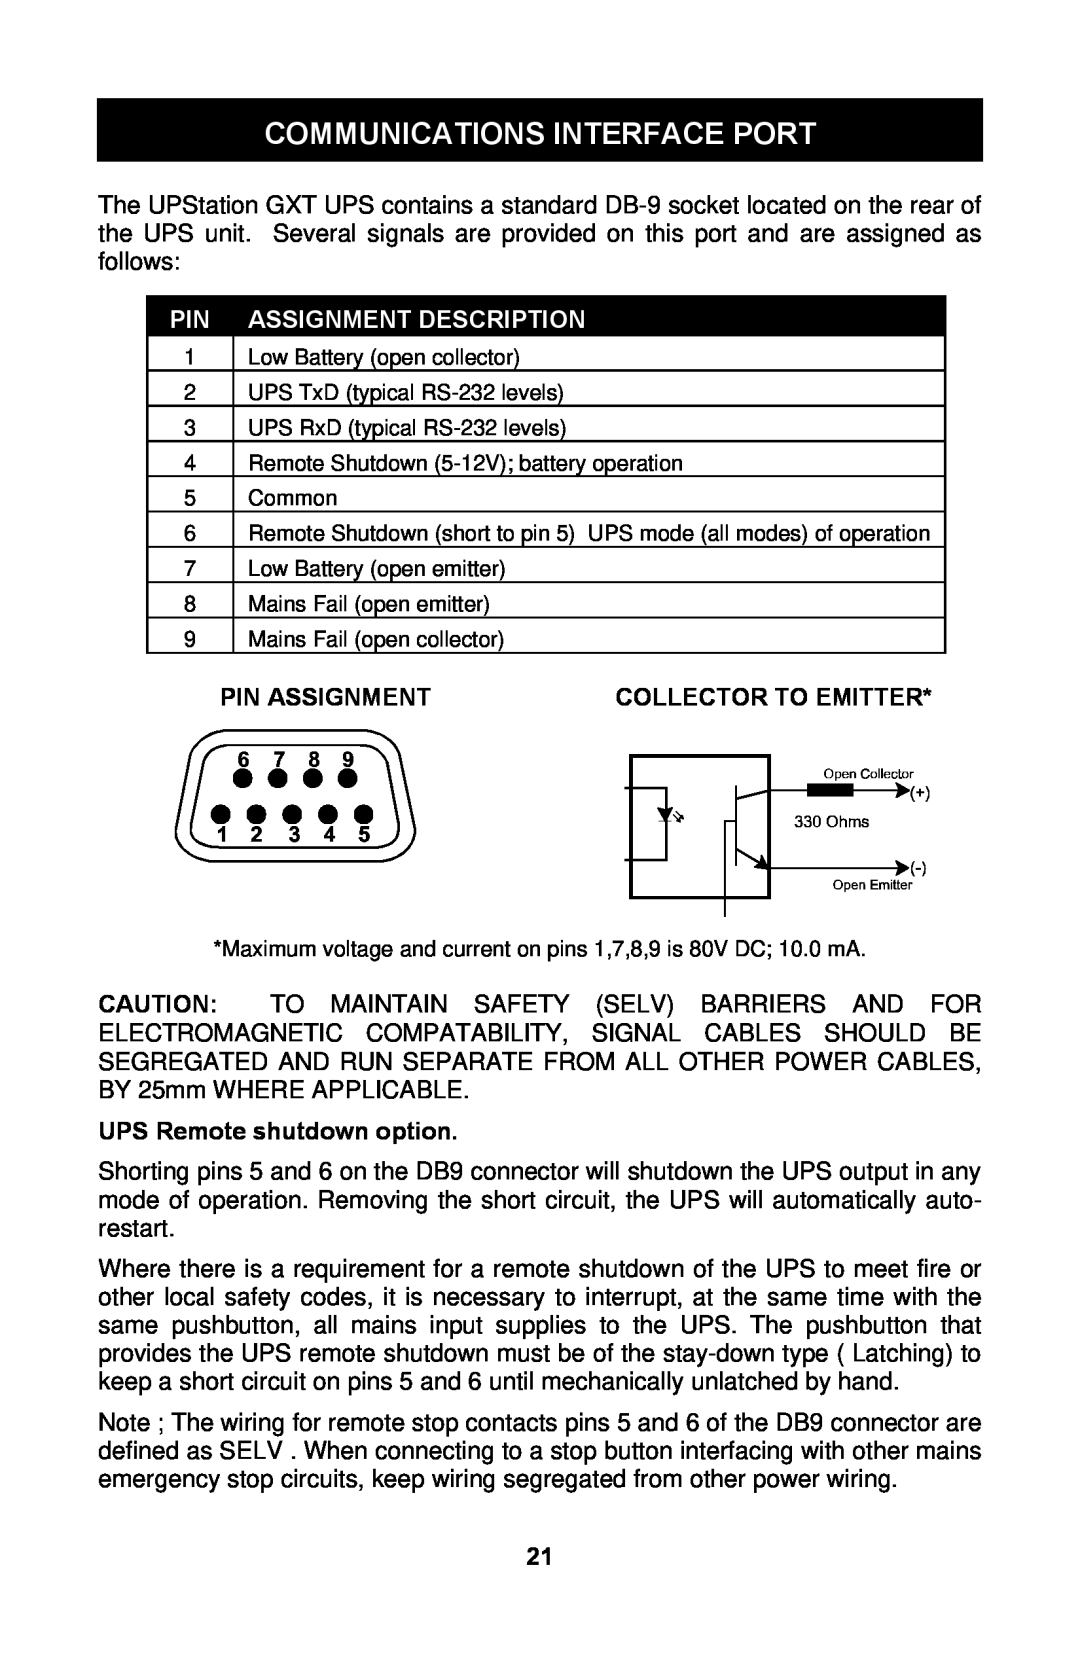 Liebert GXTTM user manual Communications Interface Port, Assignment Description, Pin Assignment, Collector To Emitter 